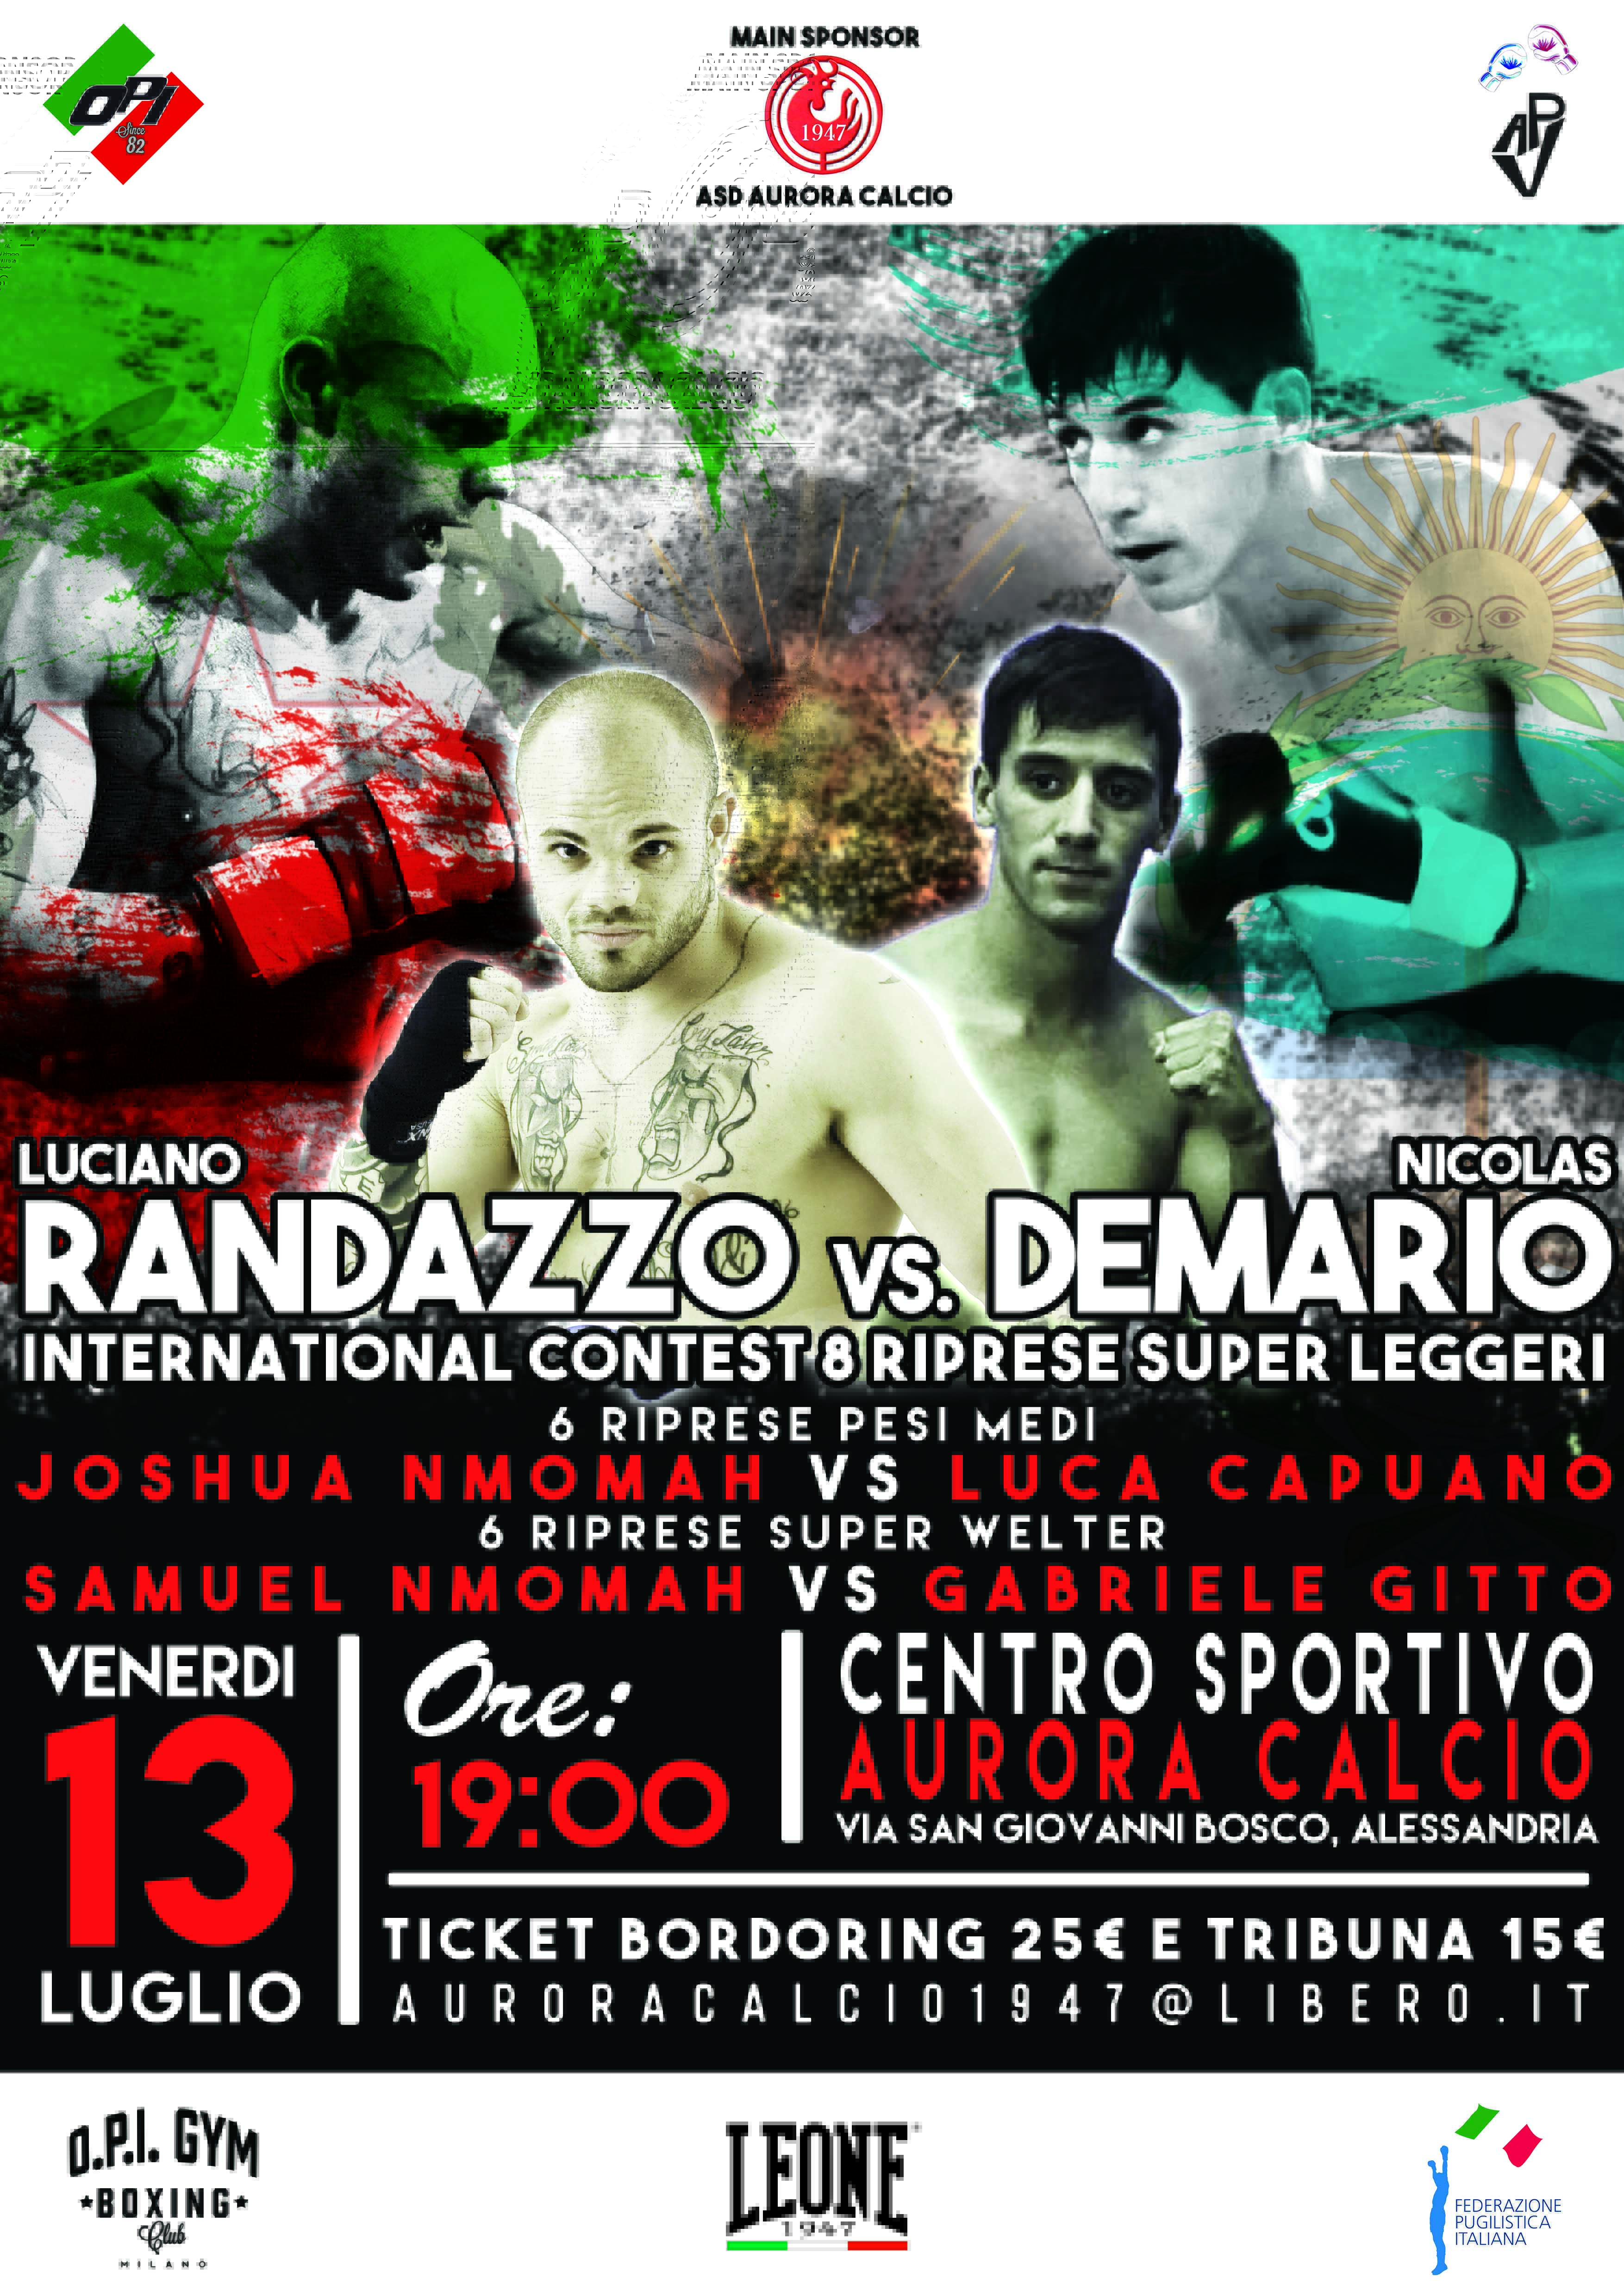 Il 13 Luglio ad Alessandria Randazzo vs DeMario Match Internazionale Superleggeri